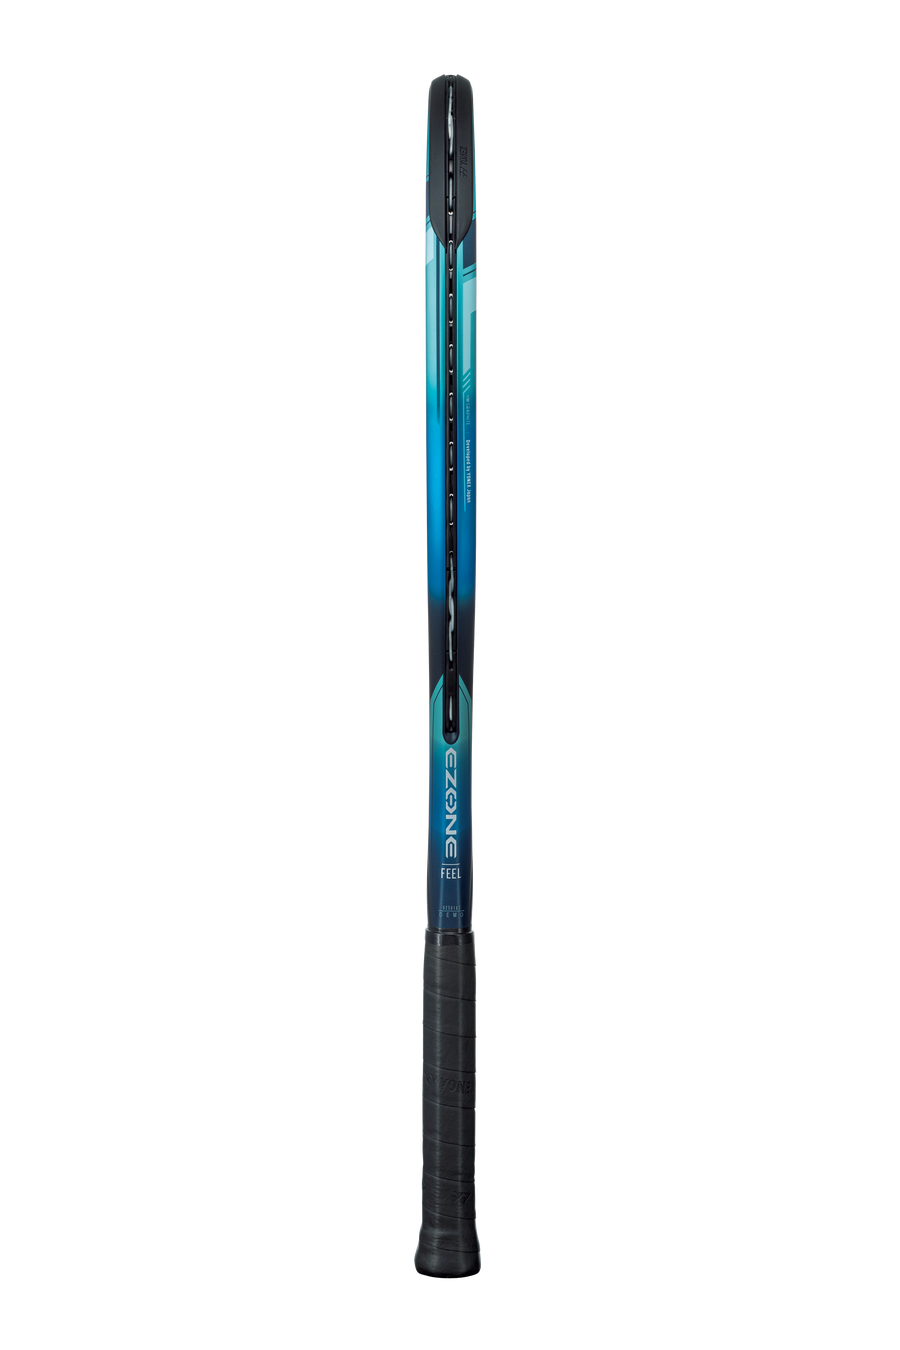 Yonex 2022 EZONE FEEL 250G Tennis Racket [Sky Blue]